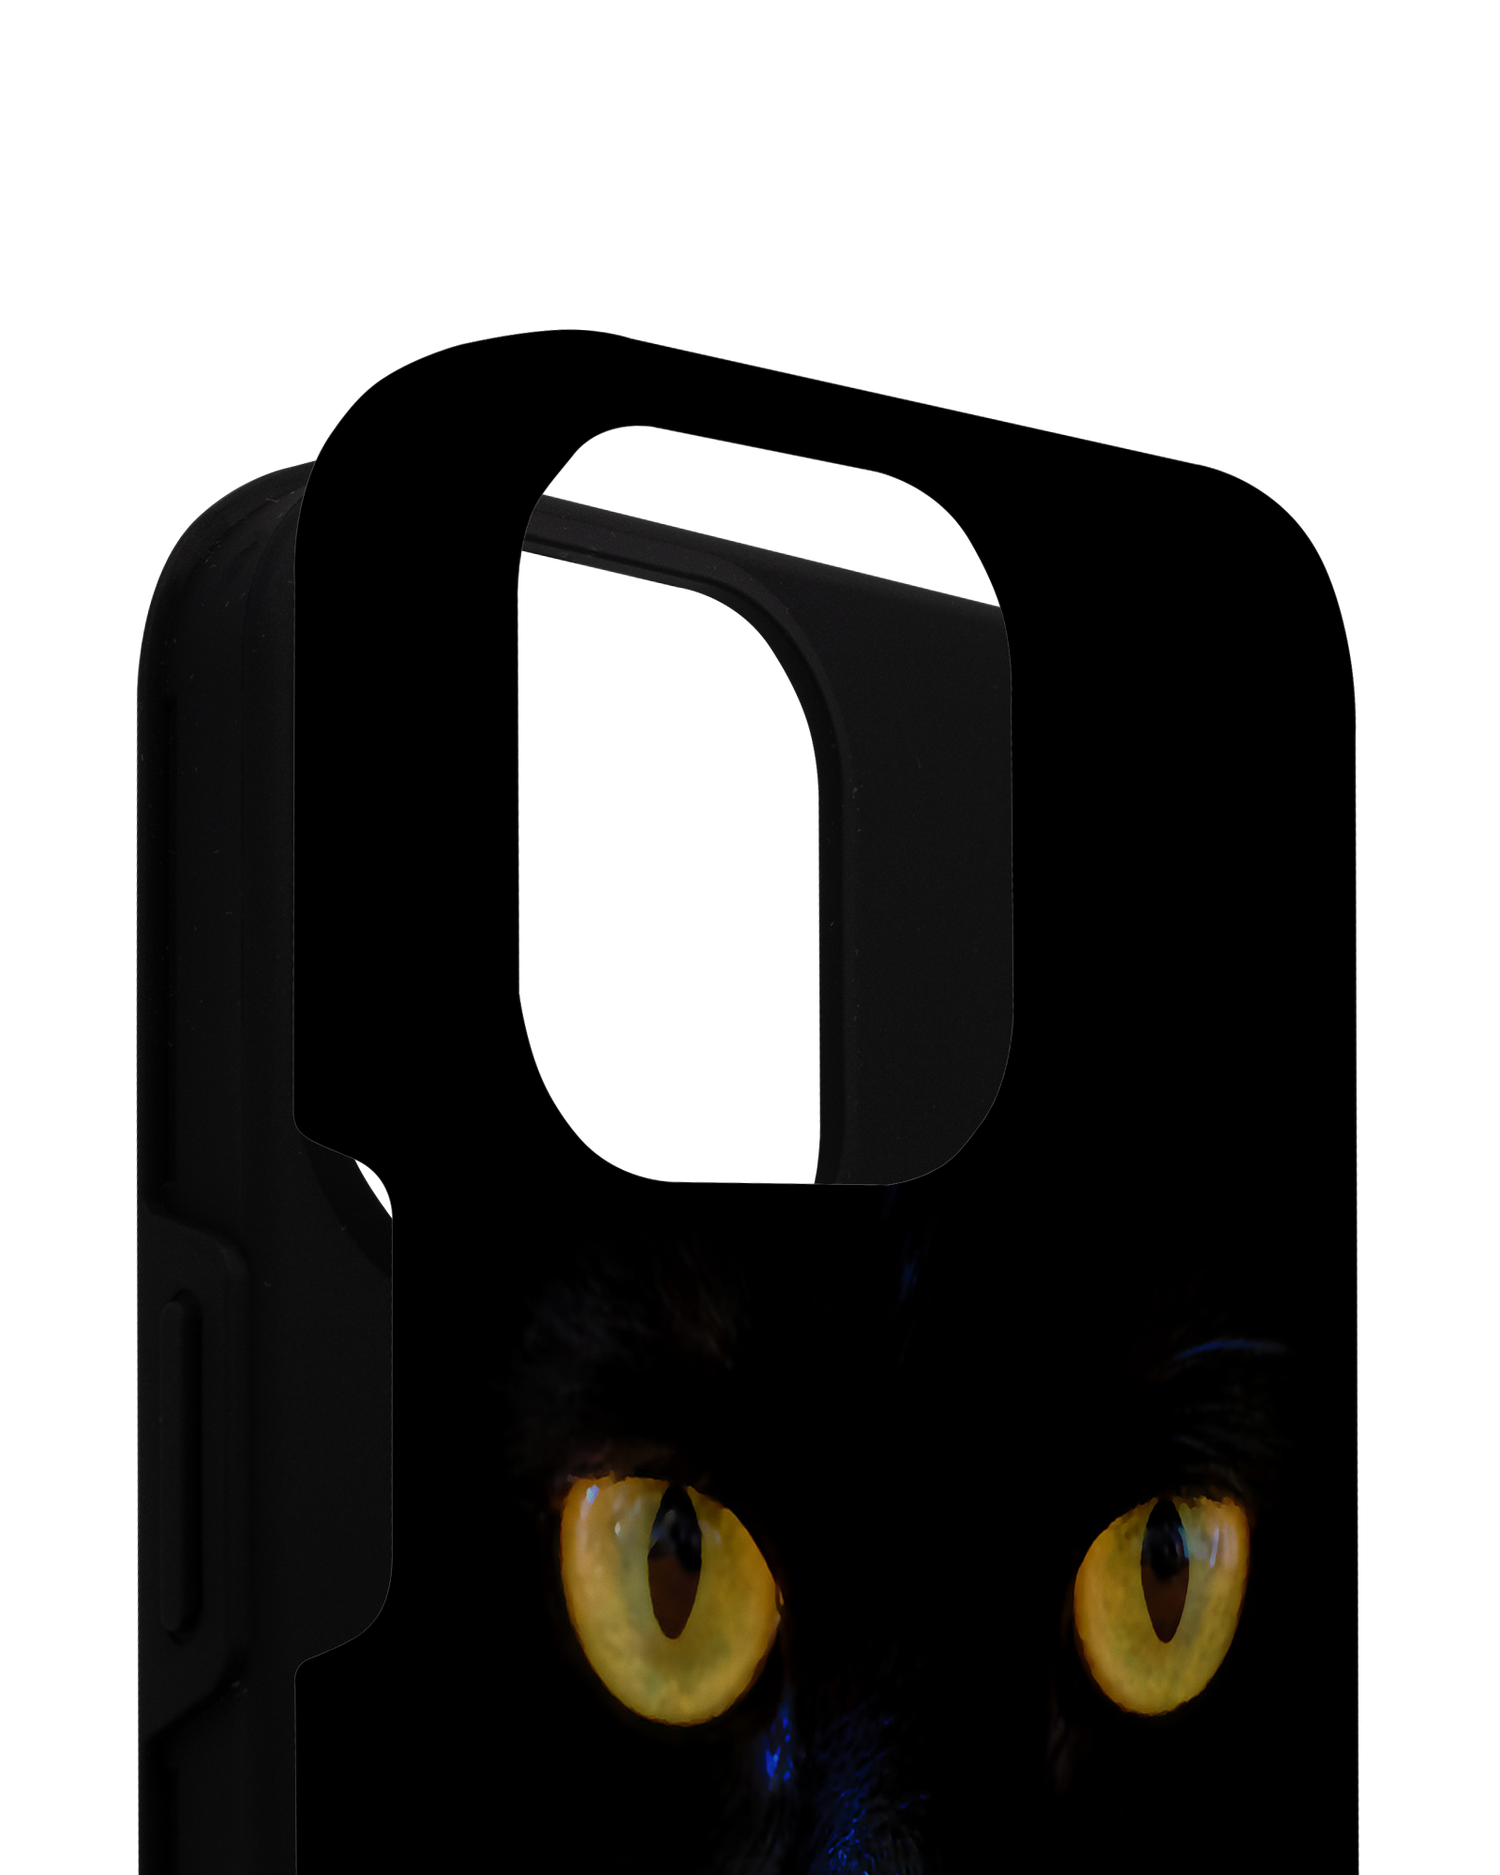 Black Cat Premium Phone Case for Apple iPhone 14 Pro Max consisting of 2 parts